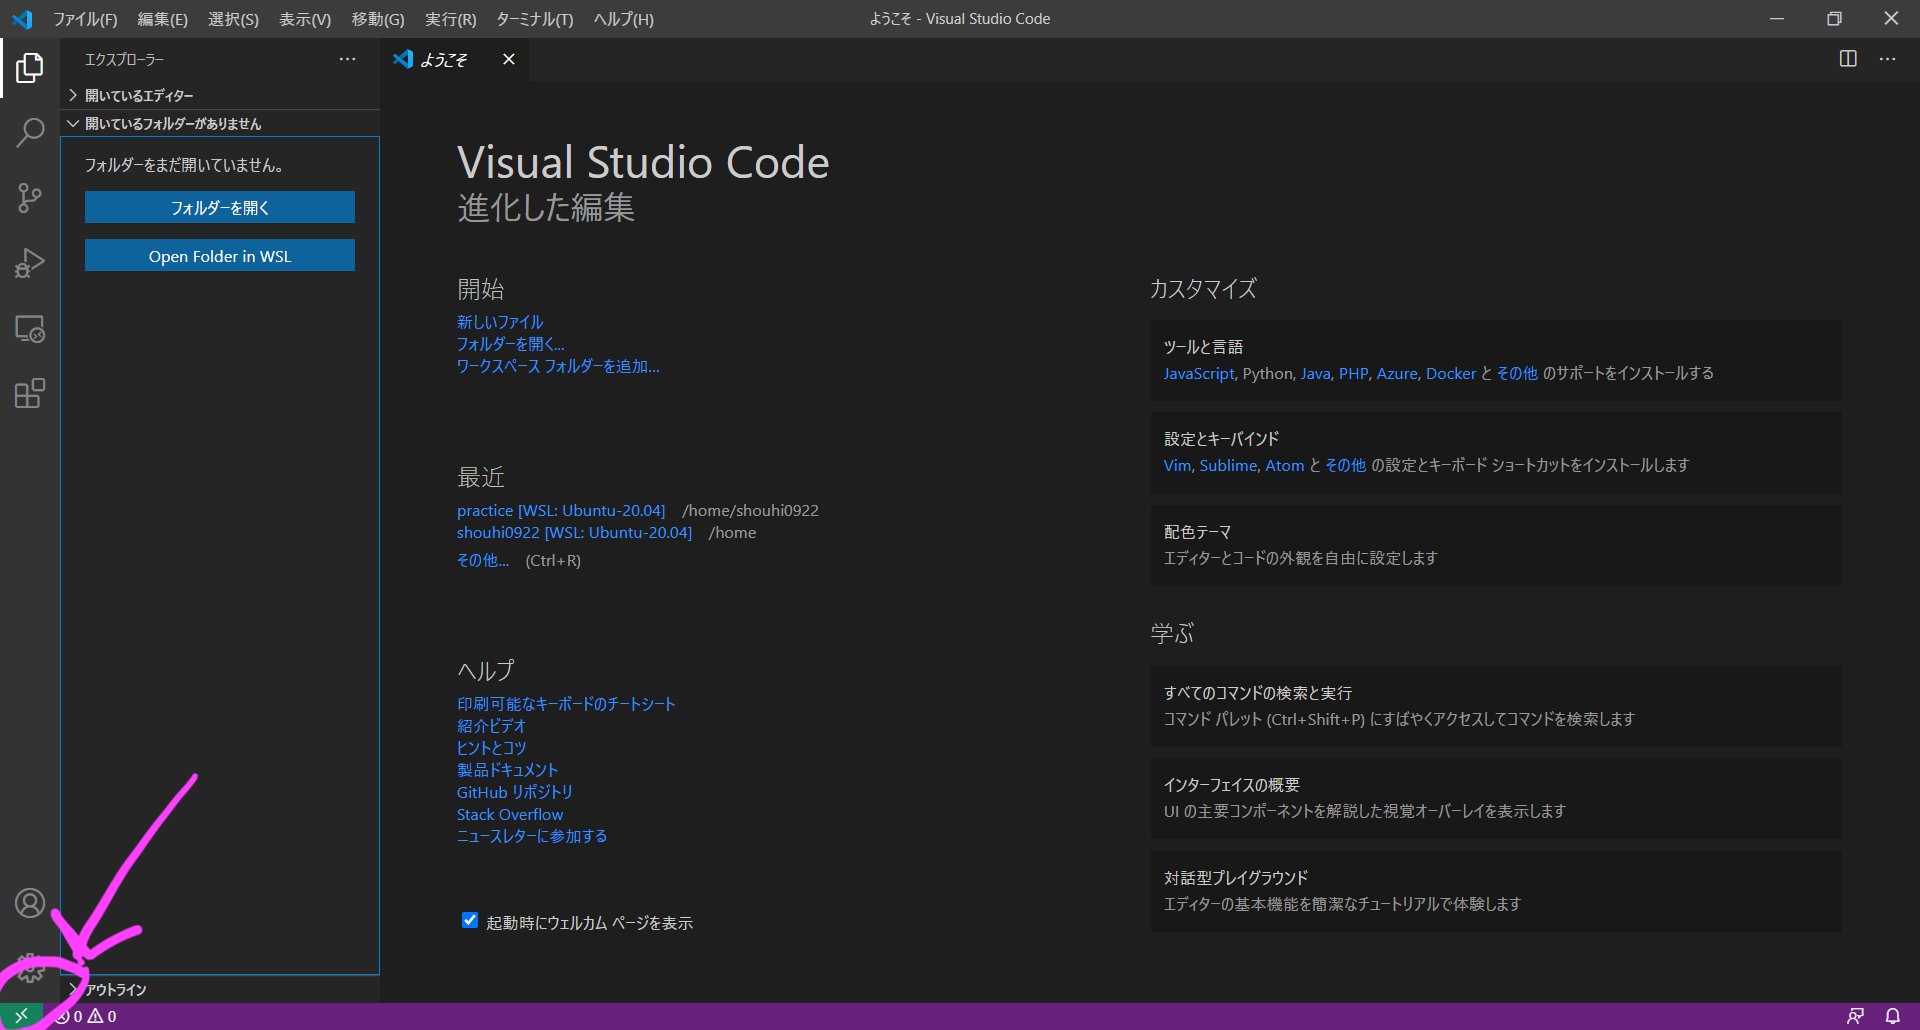 ようこそ - Visual Studio Code 2020_11_17 12_58_06.png